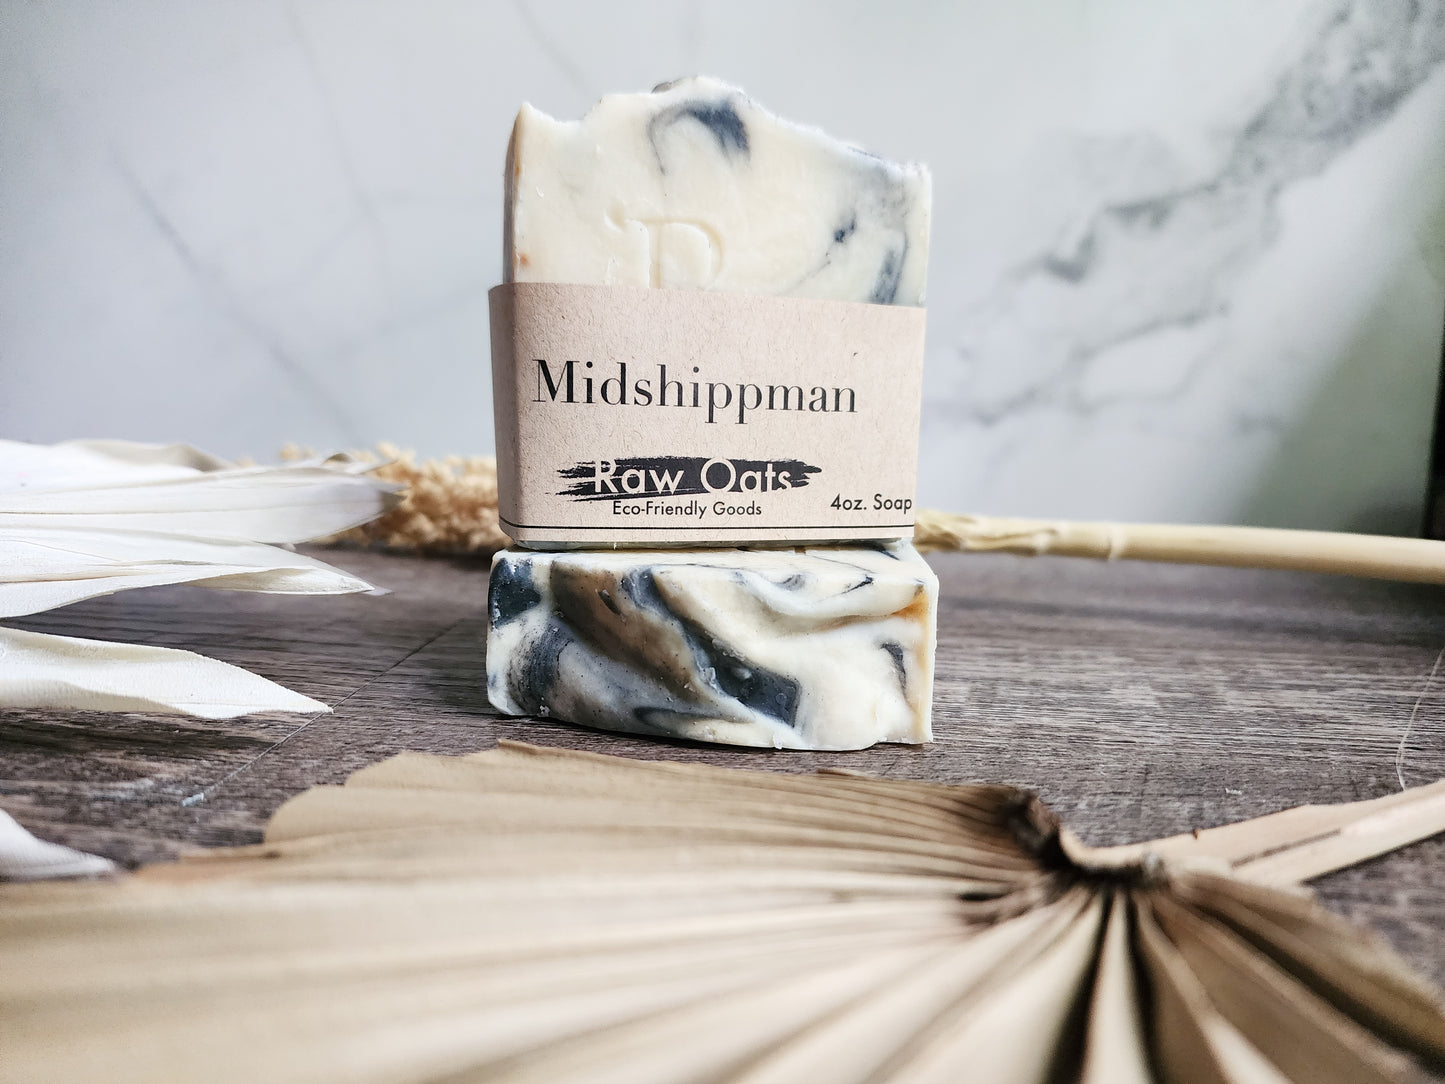 Midshippman soap